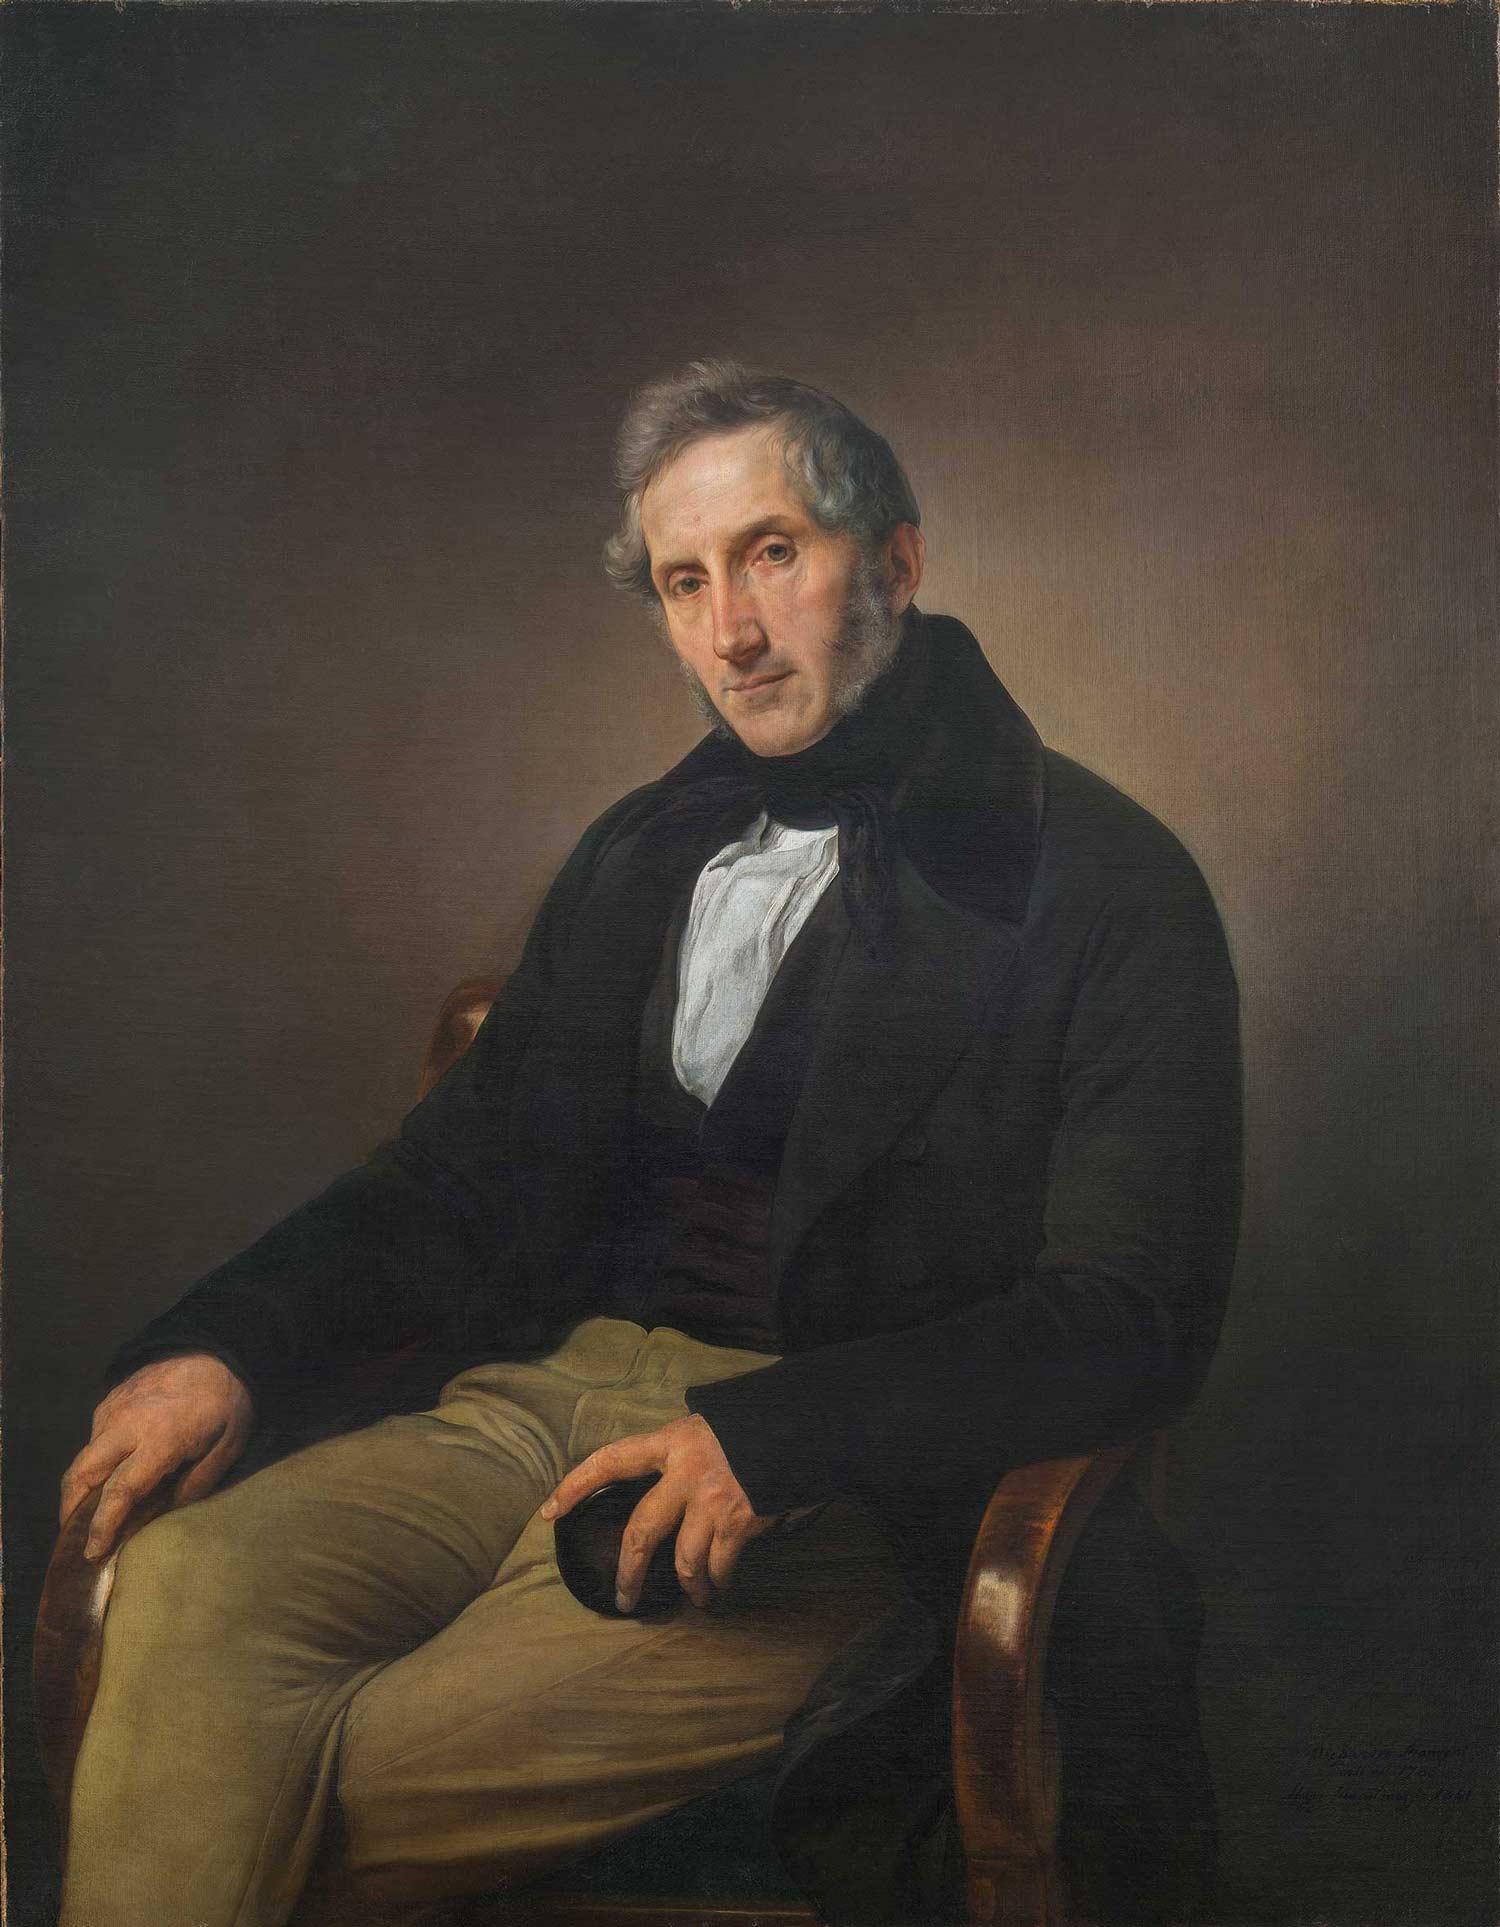 Ritratto di Alessandro Manzoni di Francesco Hayez (1841). Milano, Pinacoteca di Brera